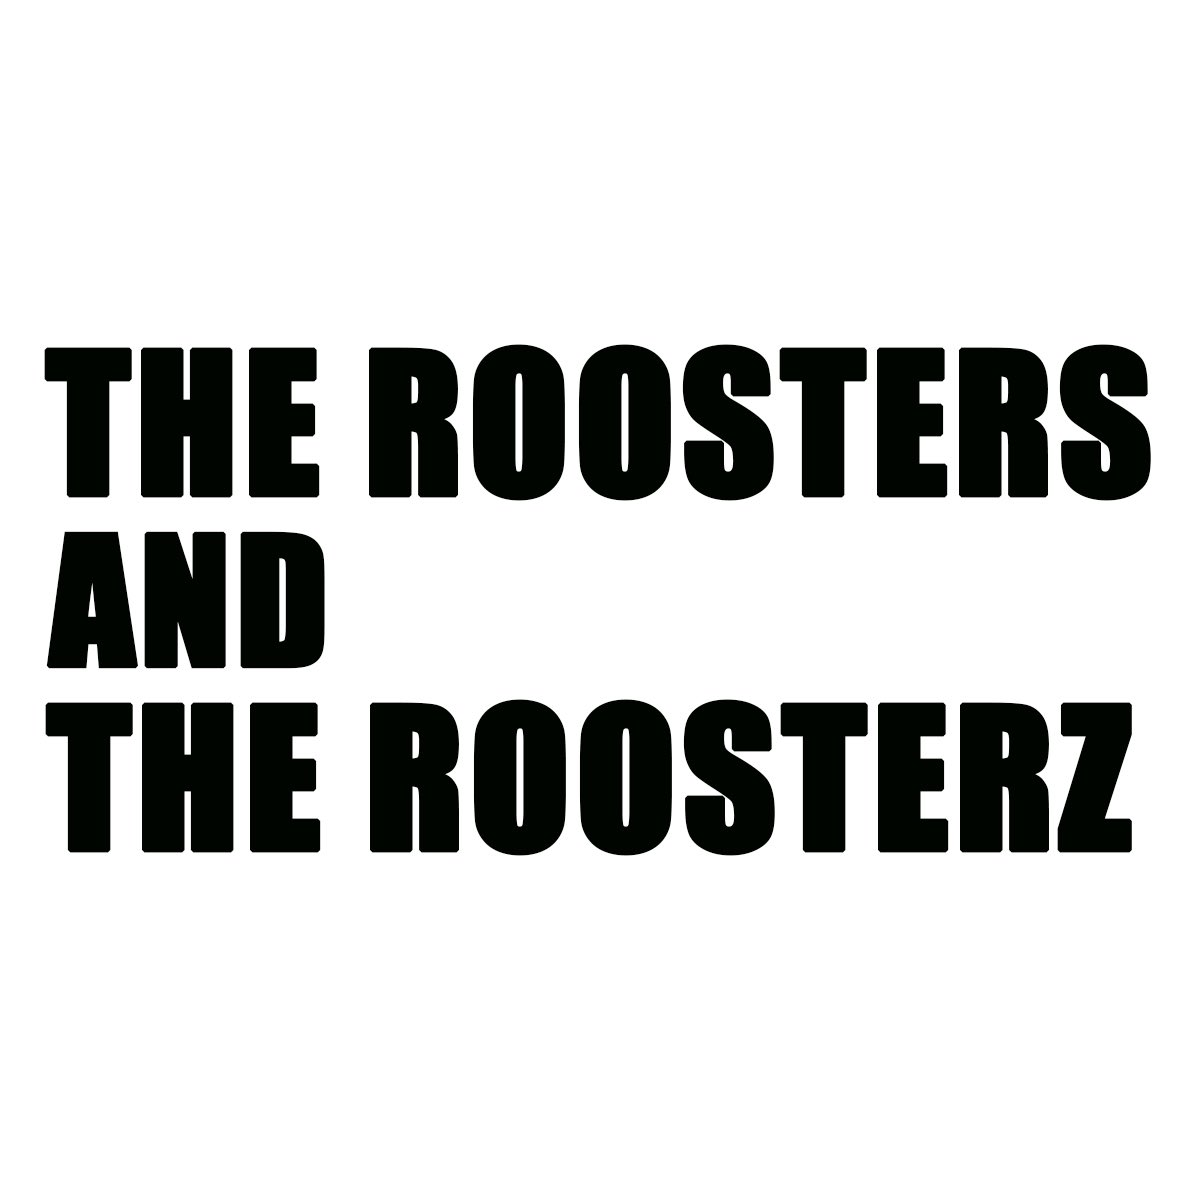 #ルースターズ 
ザ・ルースターズ
本日5/15〜貴重なシングルを一斉配信✨

楽曲はこちらから☟
lnk.to/theroostersz

そして今回はなんとメンバー全員インタビューを敢行！
columbia.jp/roosters/inter…

歴代メンバー全員が語るのはおそらく初👀

MVも3本追加
columbia.jp/roosters/index…